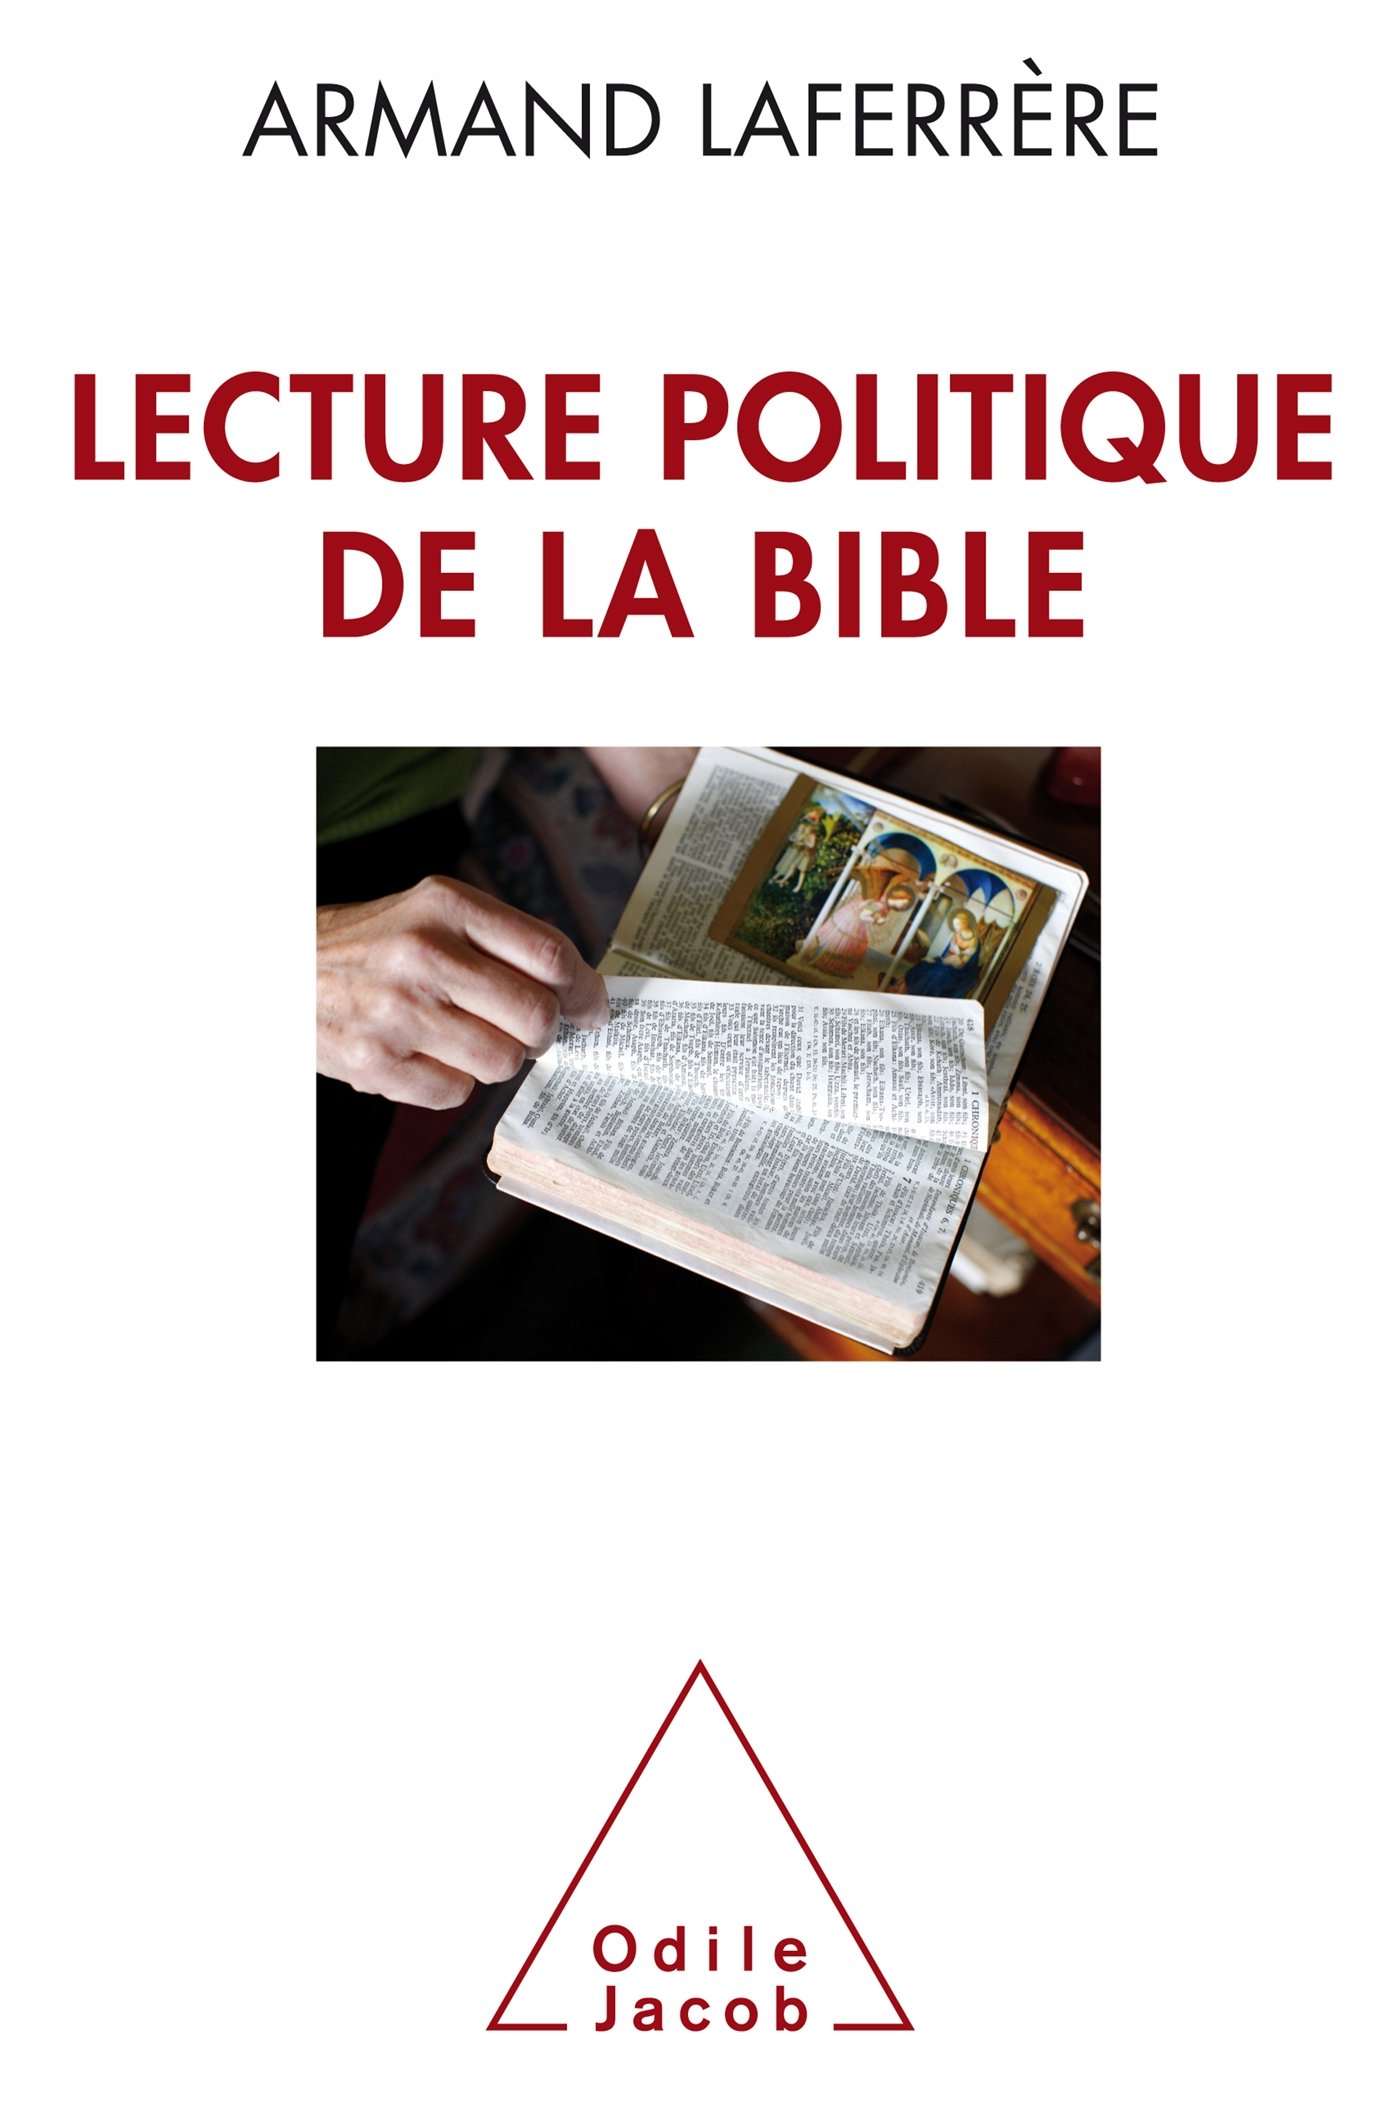 Lecture politique de la Bible, 2016, 301 p.